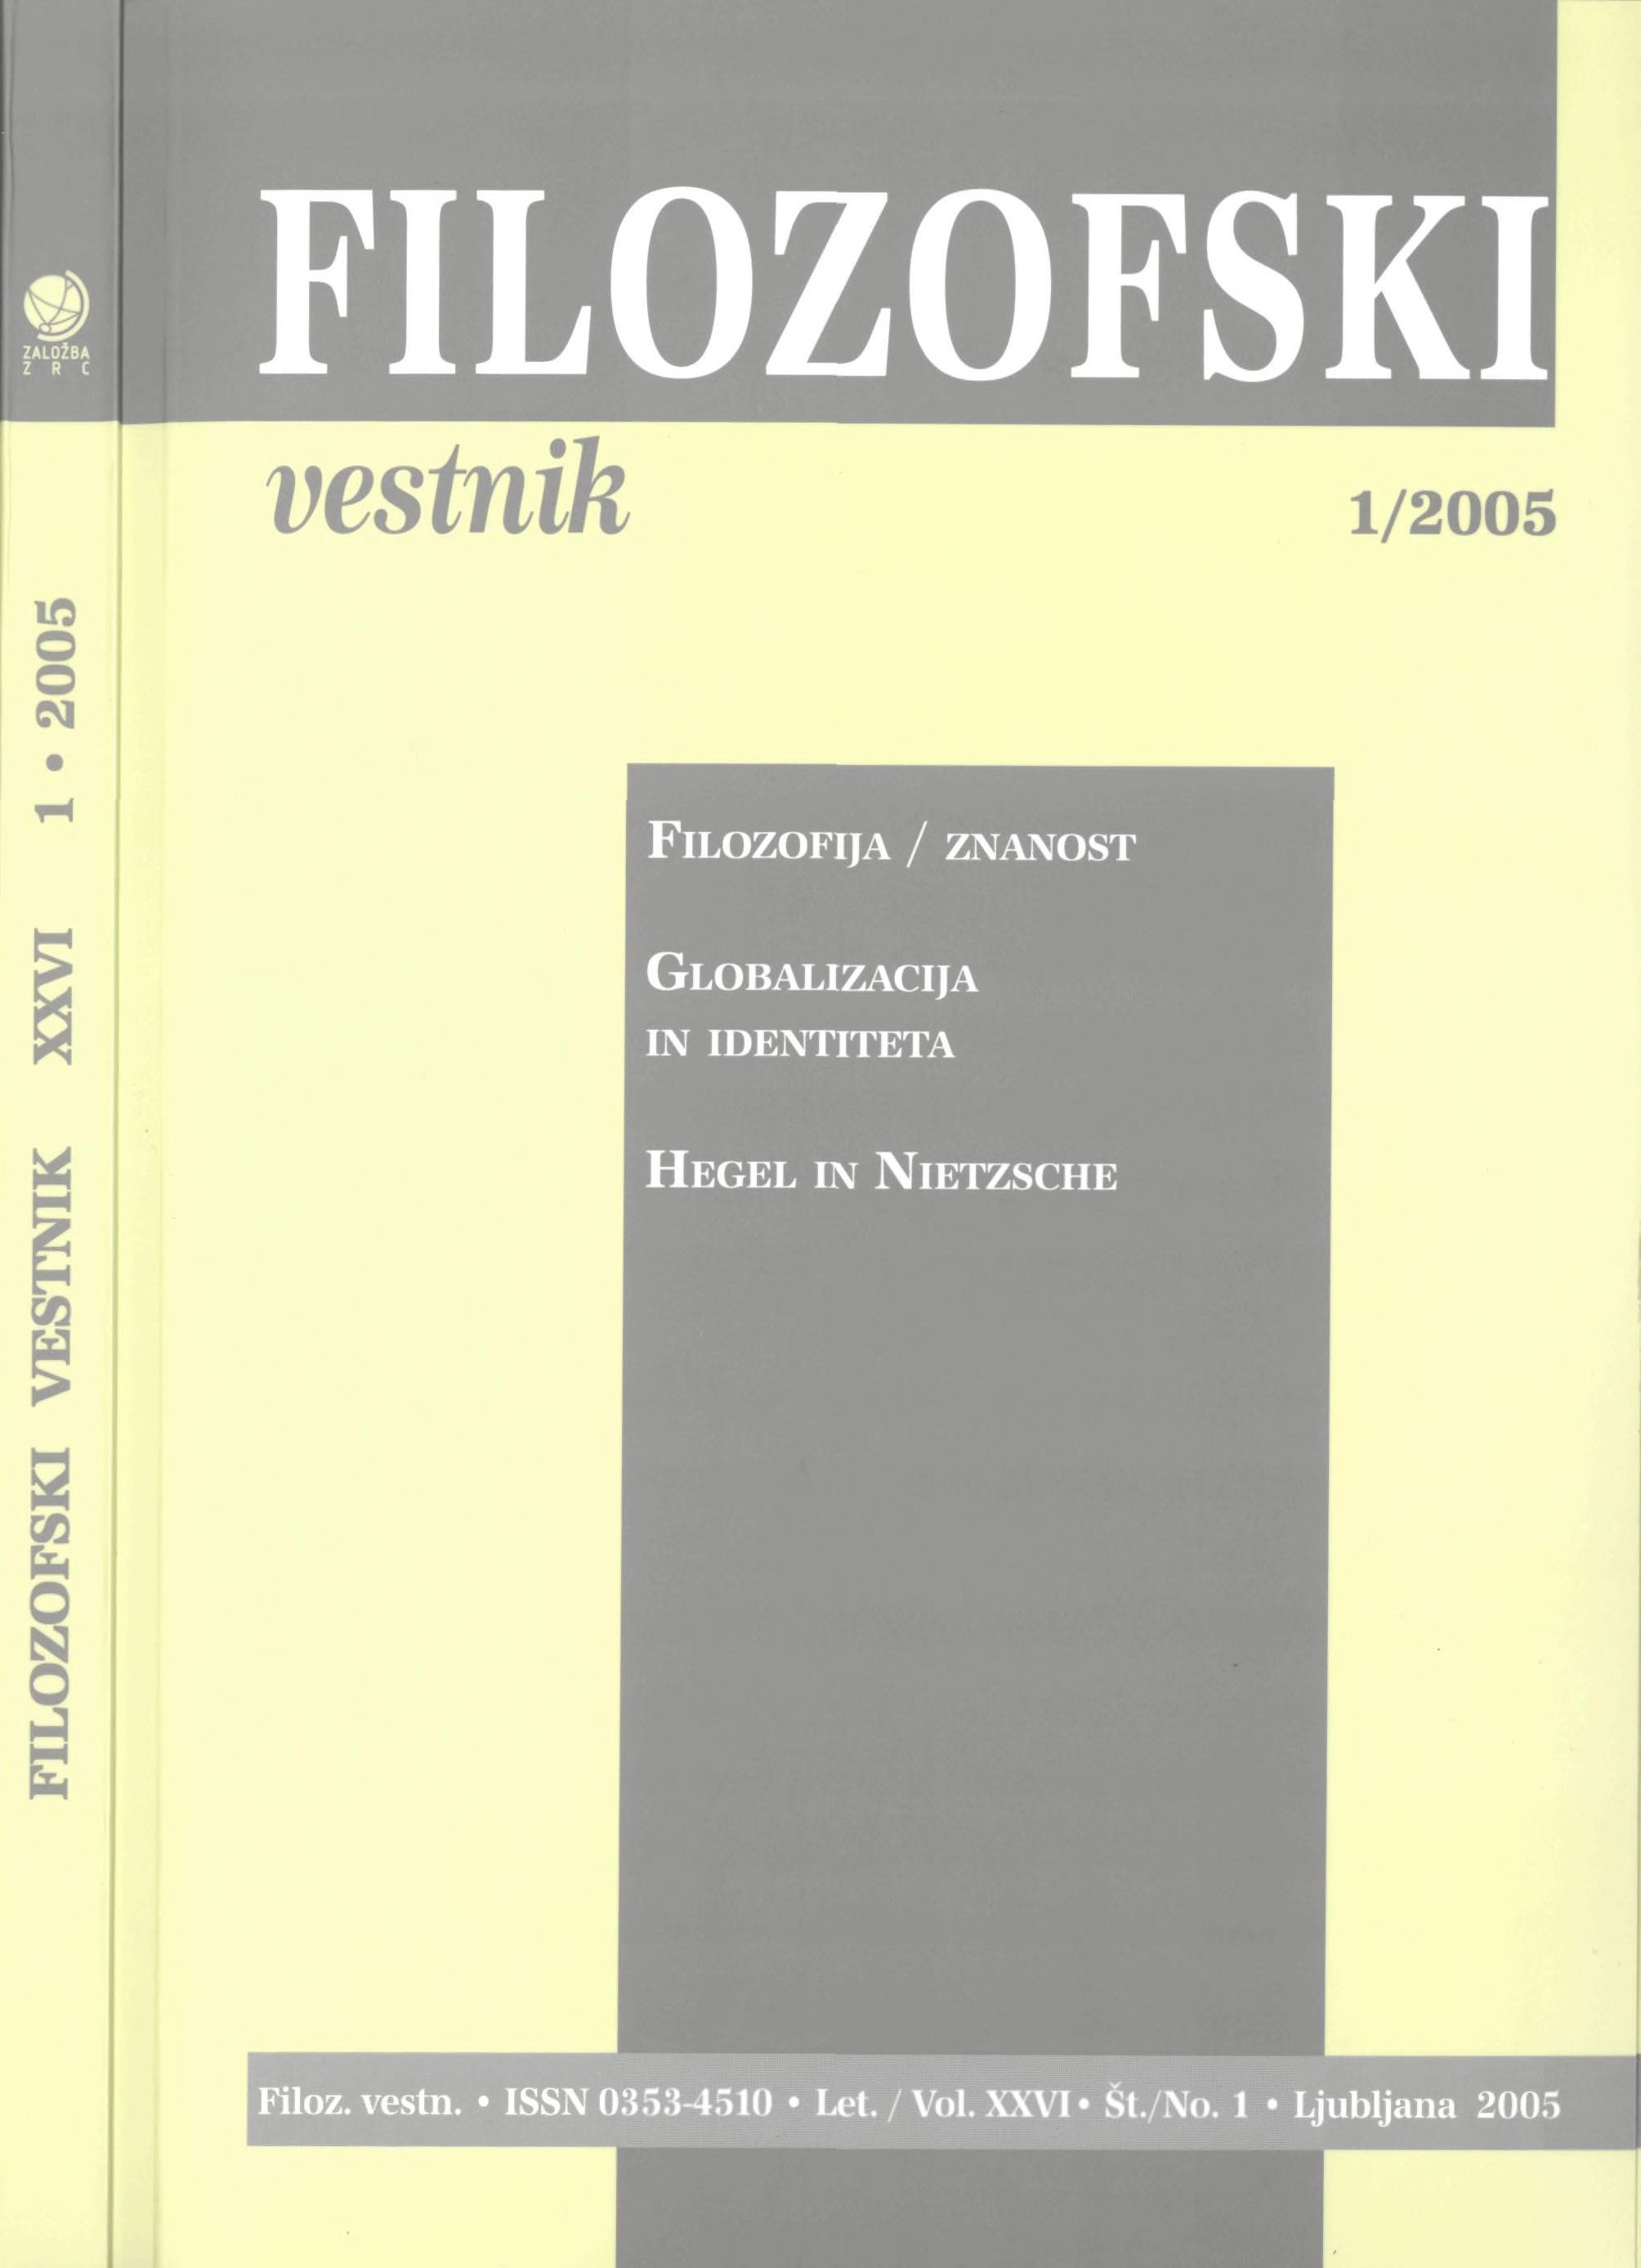 					Poglej Letn. 26 Št. 1 (2005): Filozofija/znanost, Globalizacija in identiteta, Hegel in Nietzsche
				